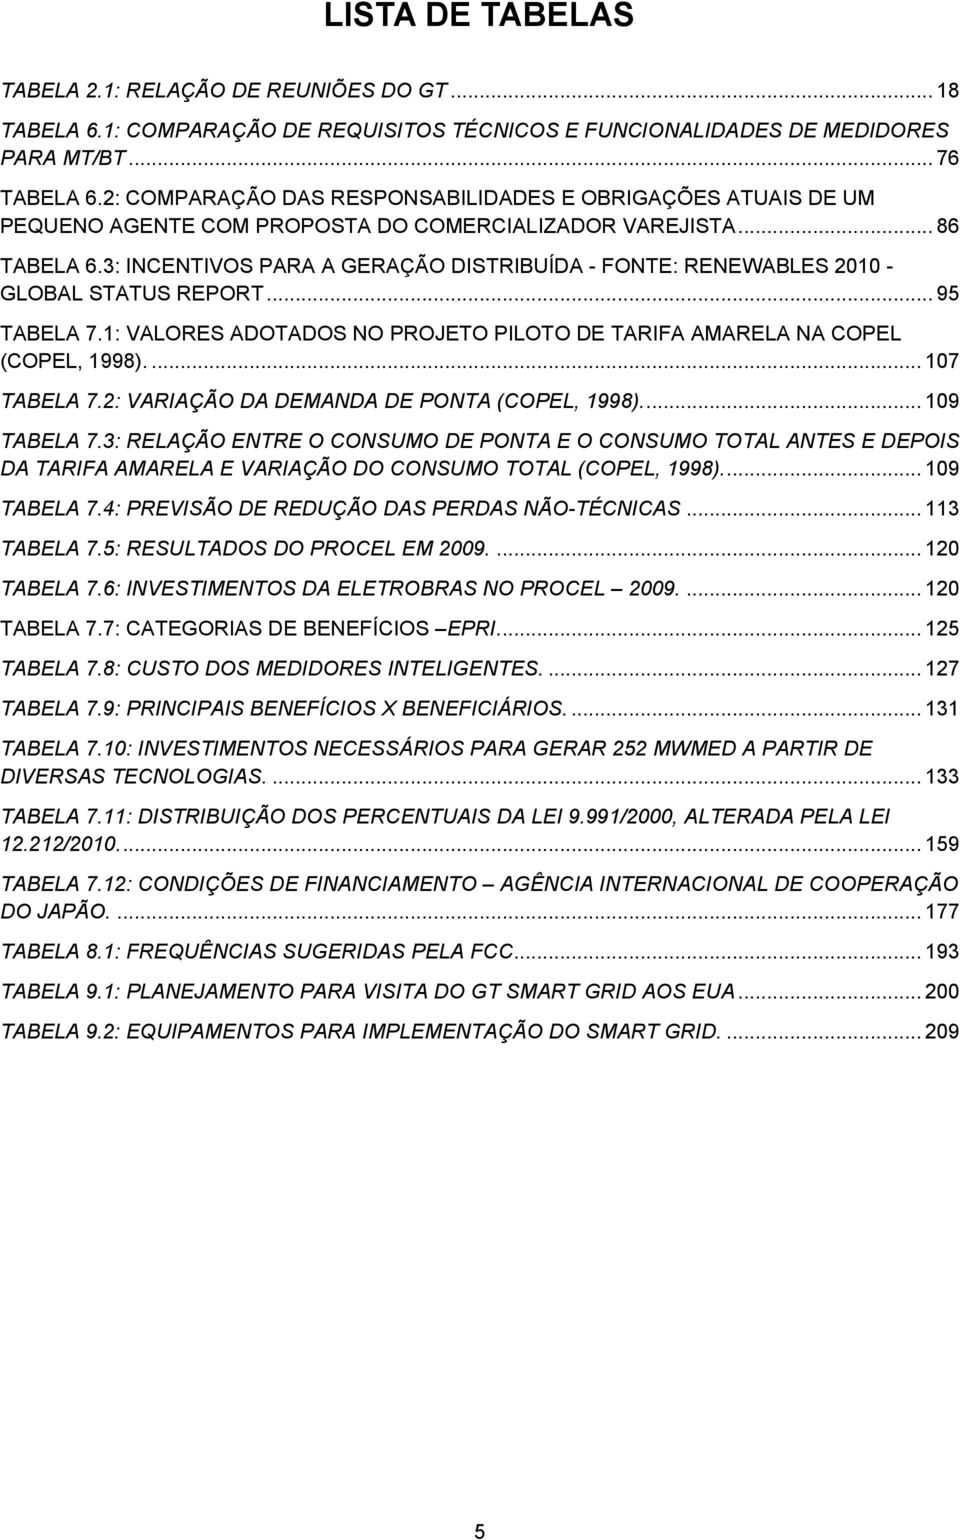 3: INCENTIVOS PARA A GERAÇÃO DISTRIBUÍDA - FONTE: RENEWABLES 2010 - GLOBAL STATUS REPORT... 95 TABELA 7.1: VALORES ADOTADOS NO PROJETO PILOTO DE TARIFA AMARELA NA COPEL (COPEL, 1998).... 107 TABELA 7.